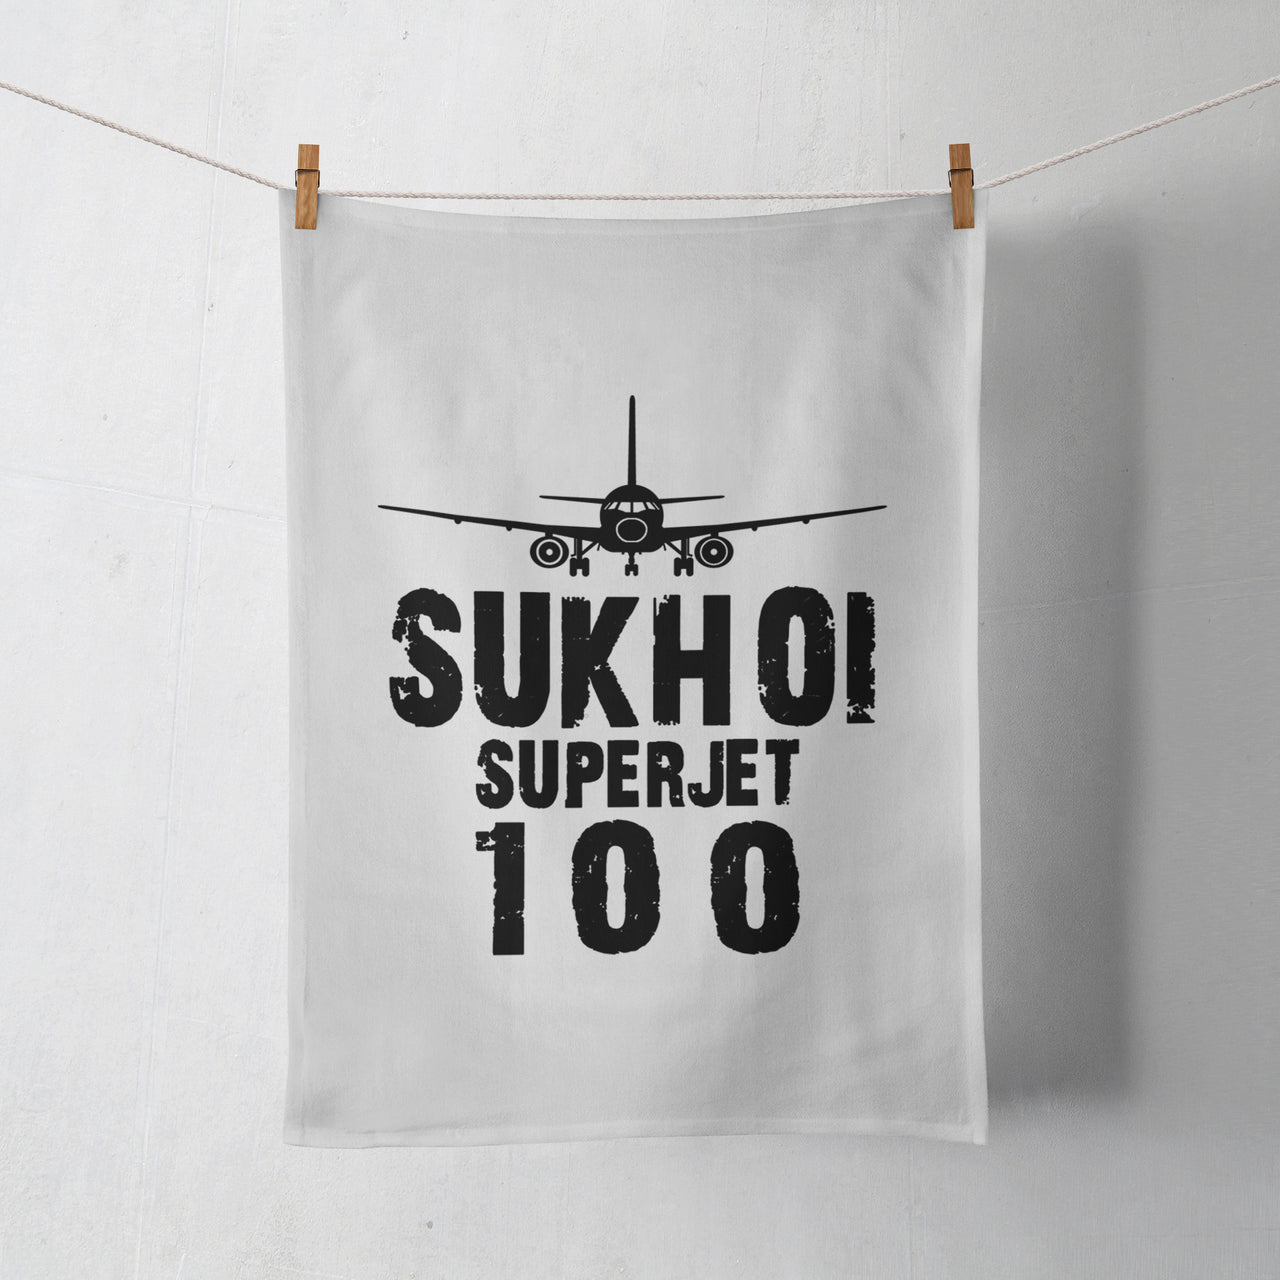 Sukhoi Superjet 100 & Plane Designed Towels